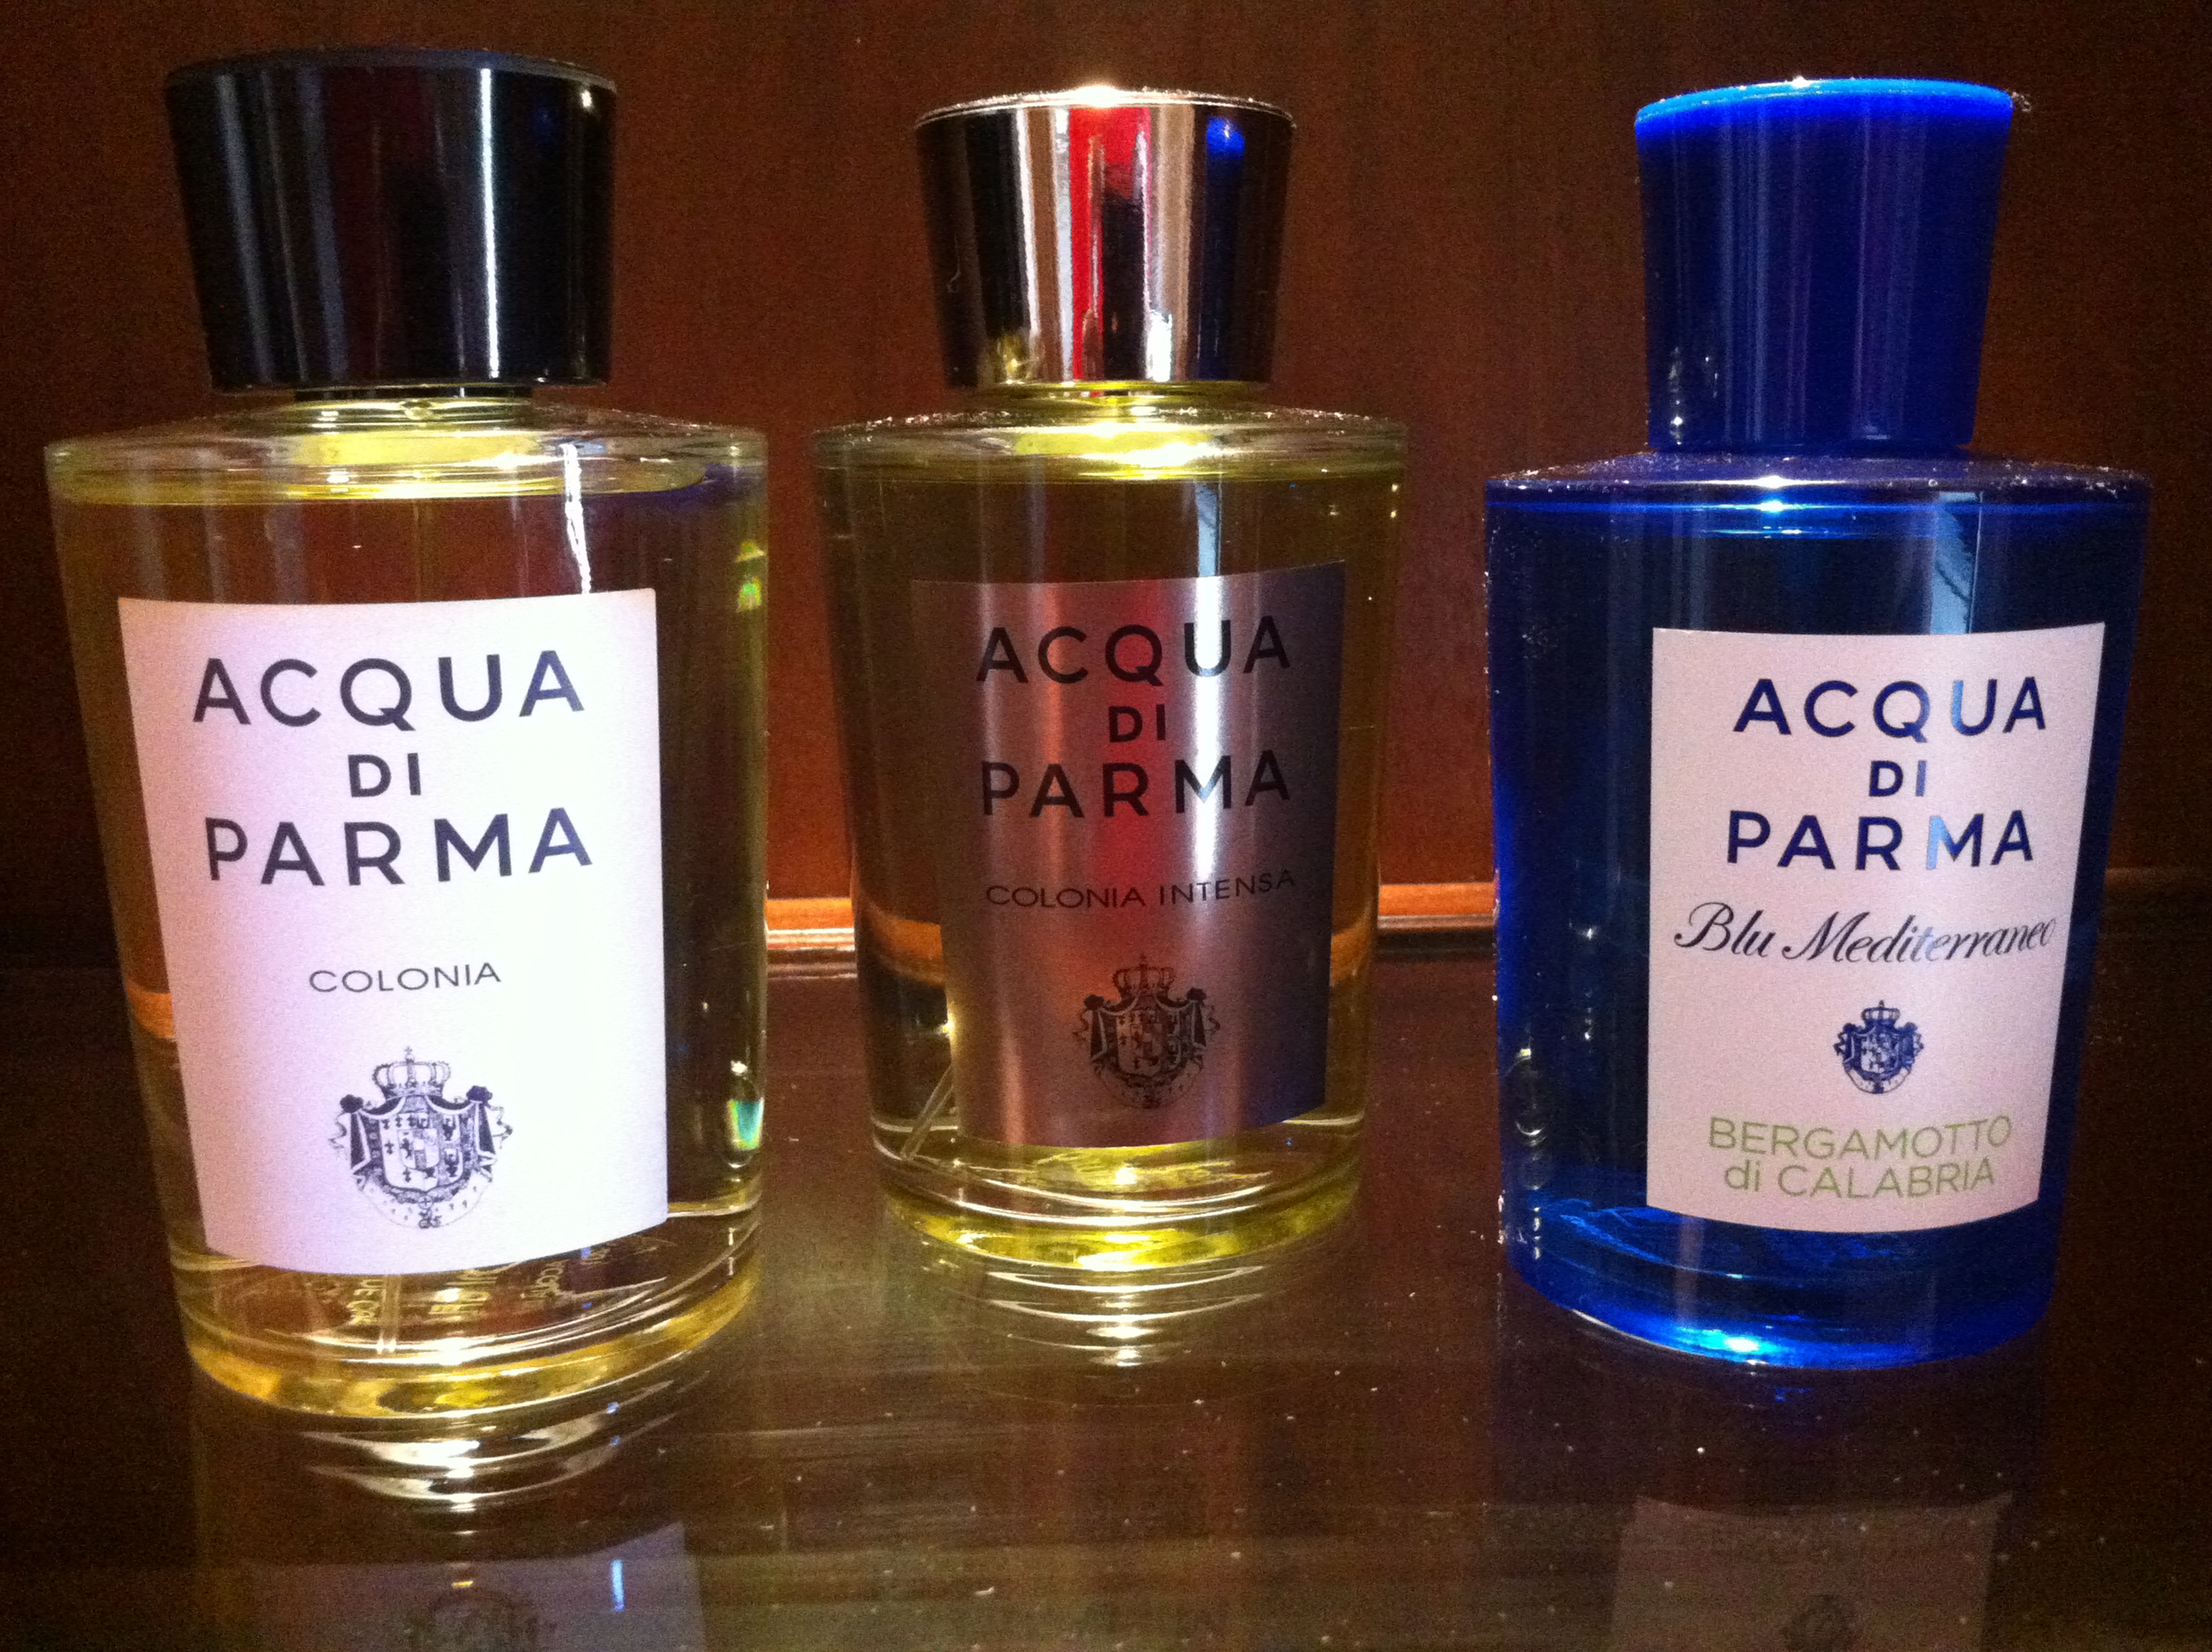 Acqua di Parma: a history of the fragrance